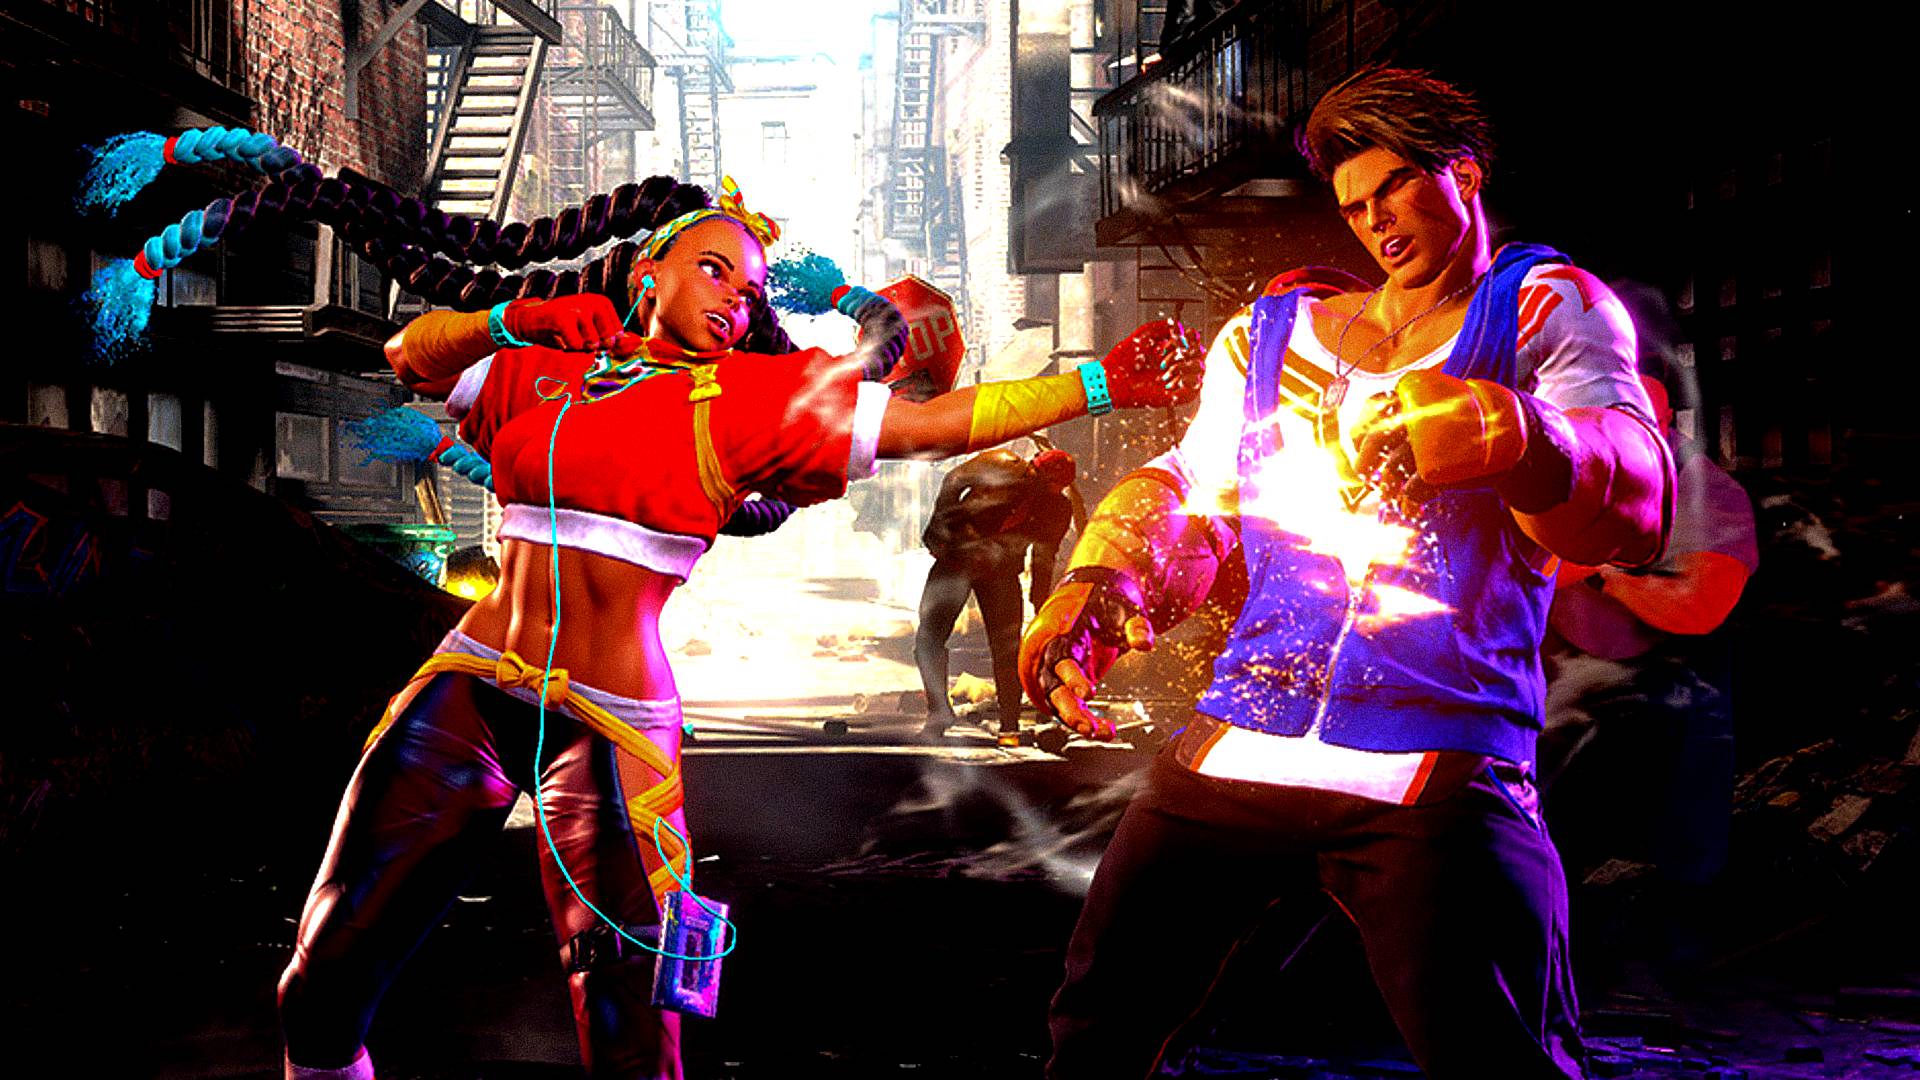 Beta fechado de Street Fighter 6 chegará ao Xbox em outubro - Windows Club